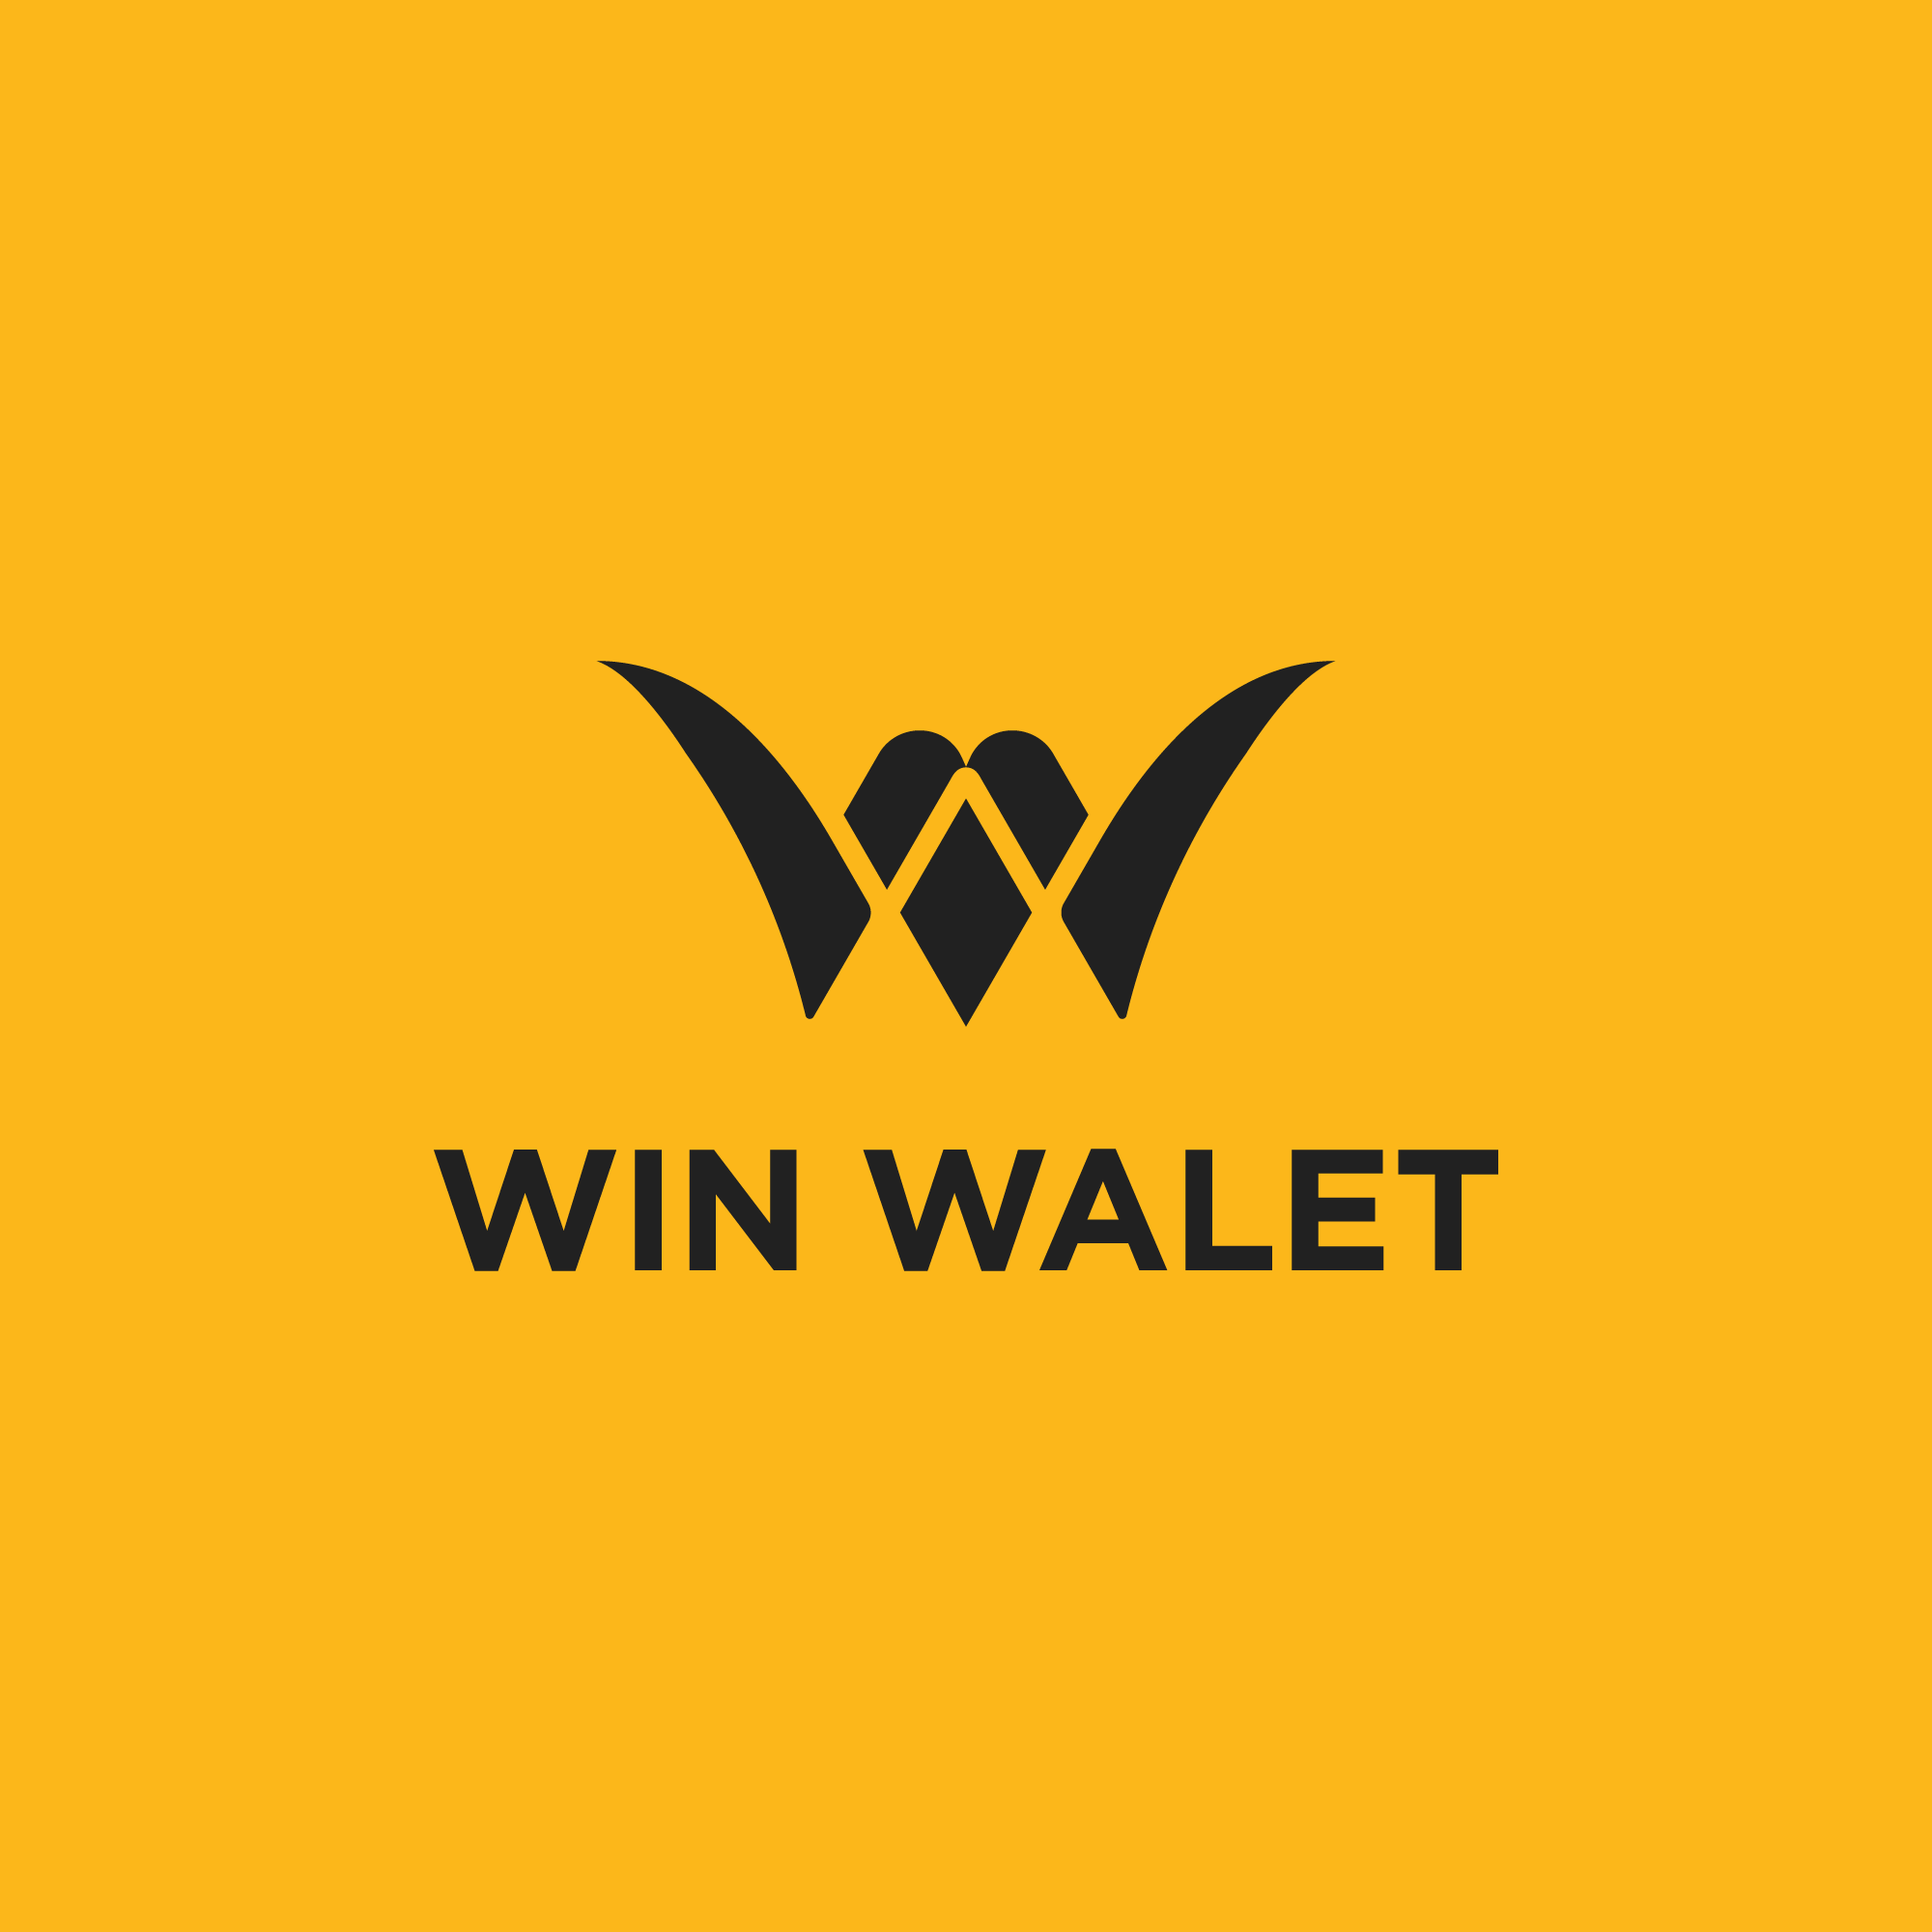 Black logo YWinwallet Guideline